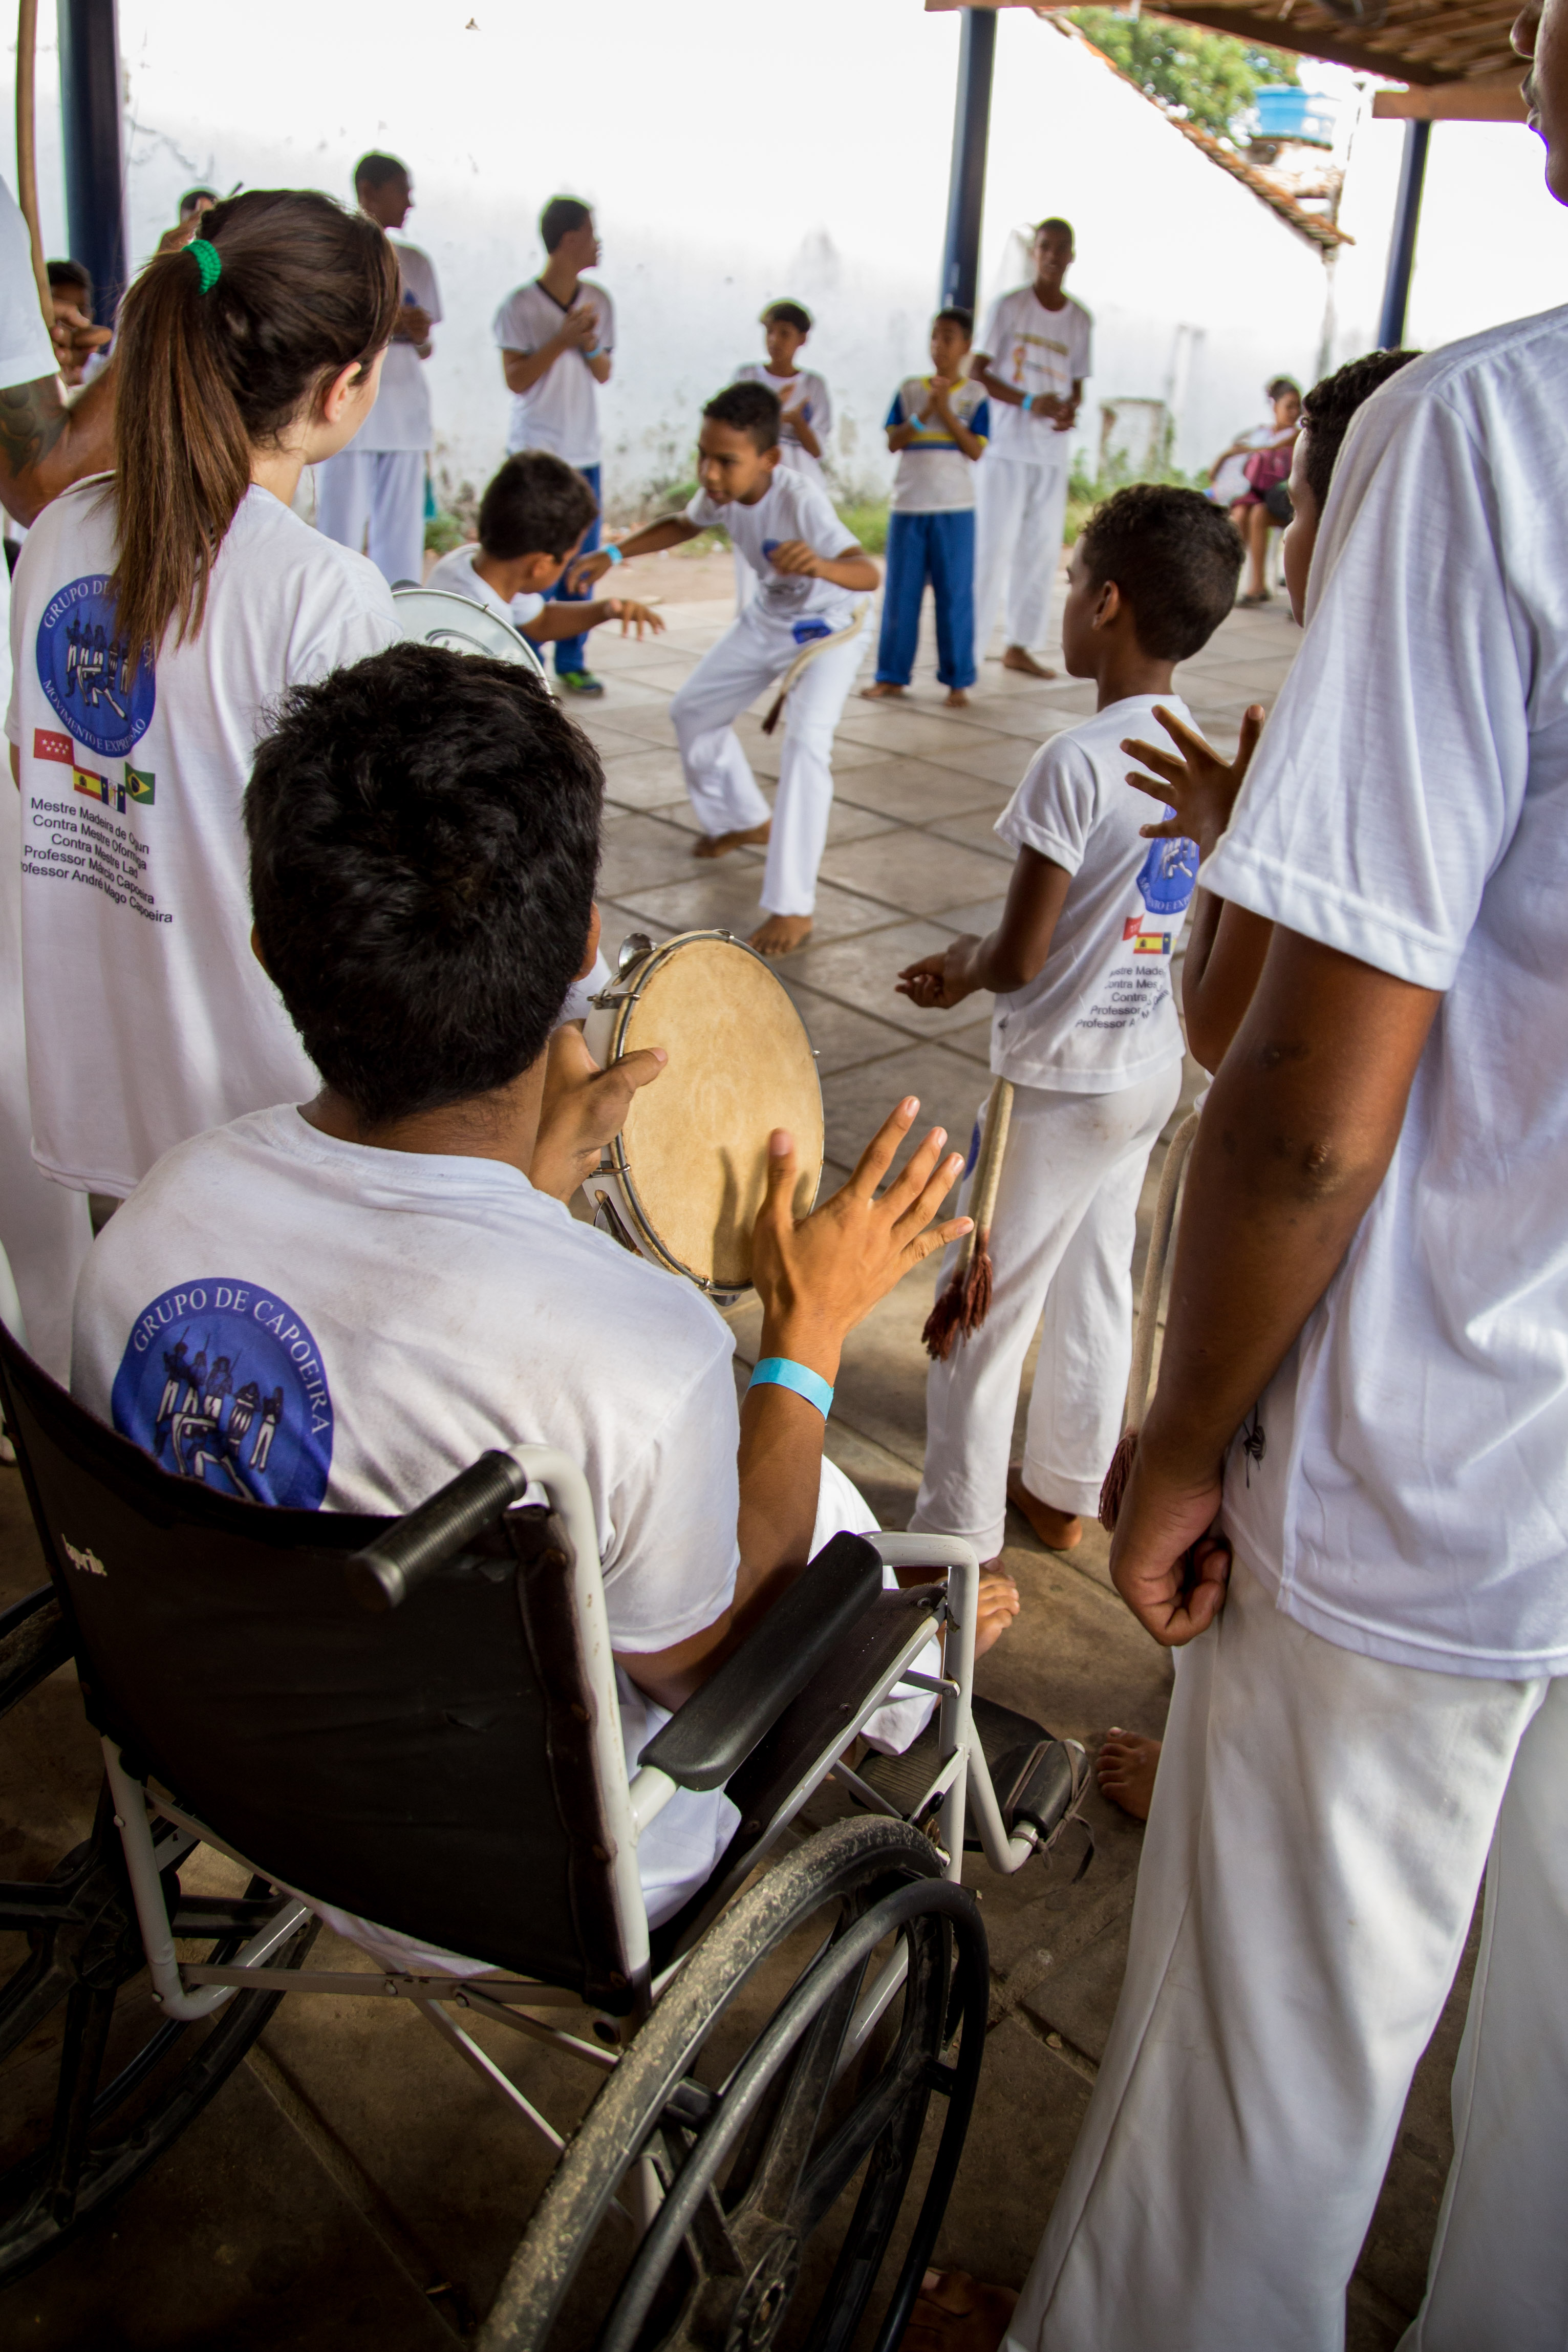 Um estudante com deficiência física está sentado em uma cadeira de rodas e é mostrado de perfil tocando um pandeiro. Ao seu redor, alunos jogam capoeira. Todos vestem roupas brancas.